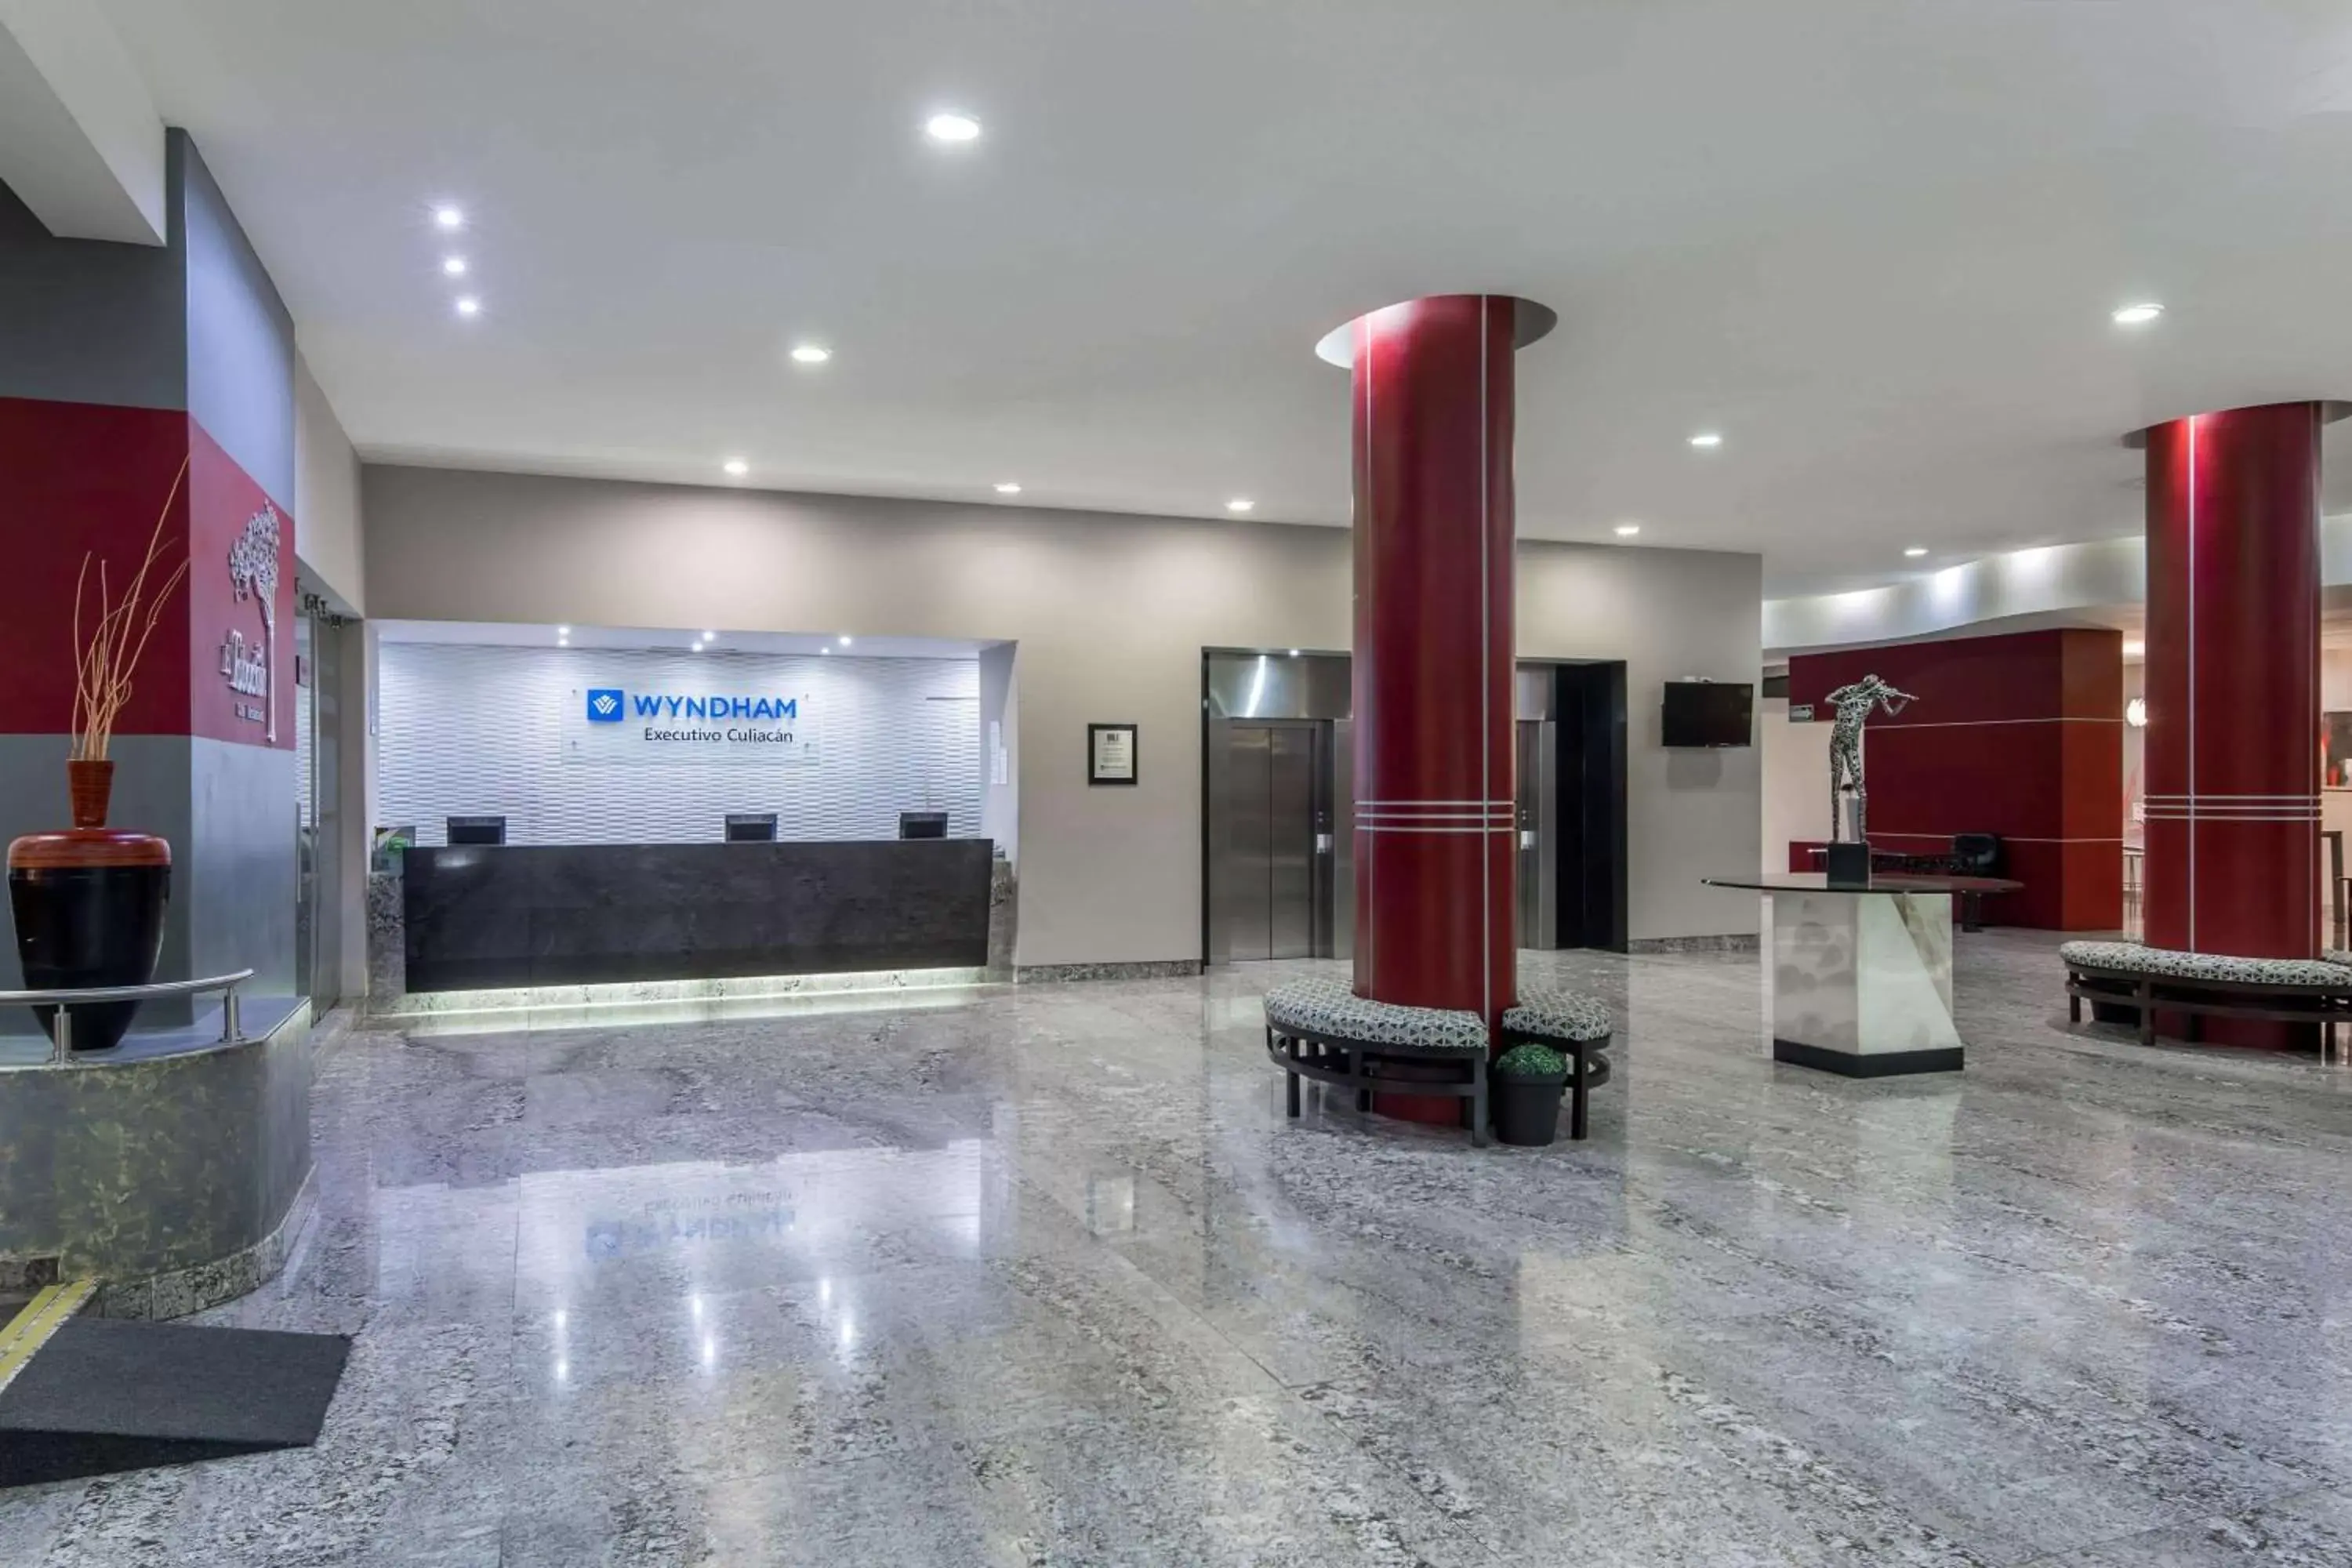 Lobby or reception, Lobby/Reception in Wyndham Executivo Culiacan